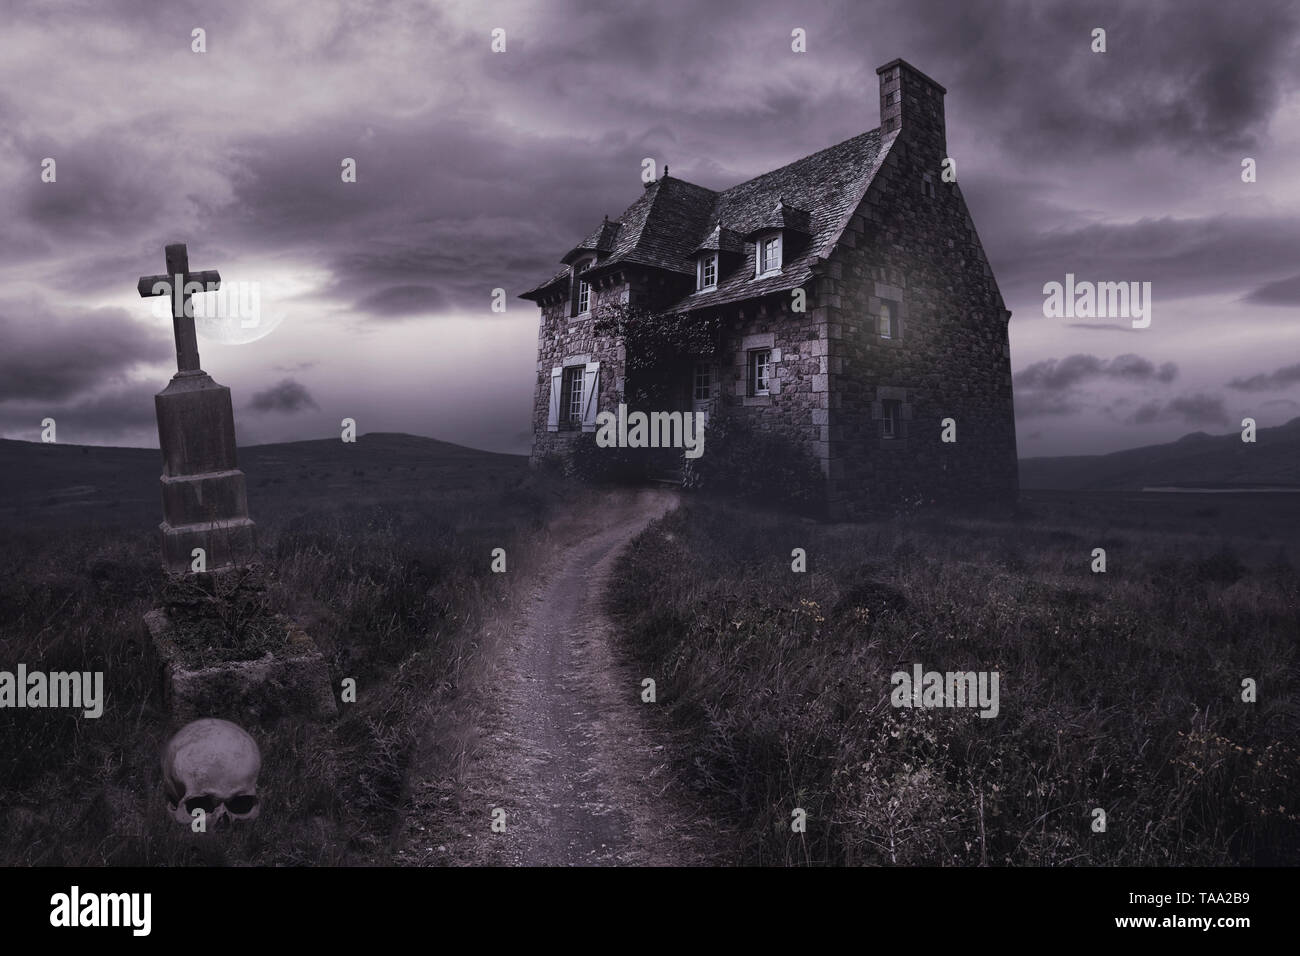 Halloween apocalyptique paysage avec maison ancienne, du crâne et de graves Banque D'Images